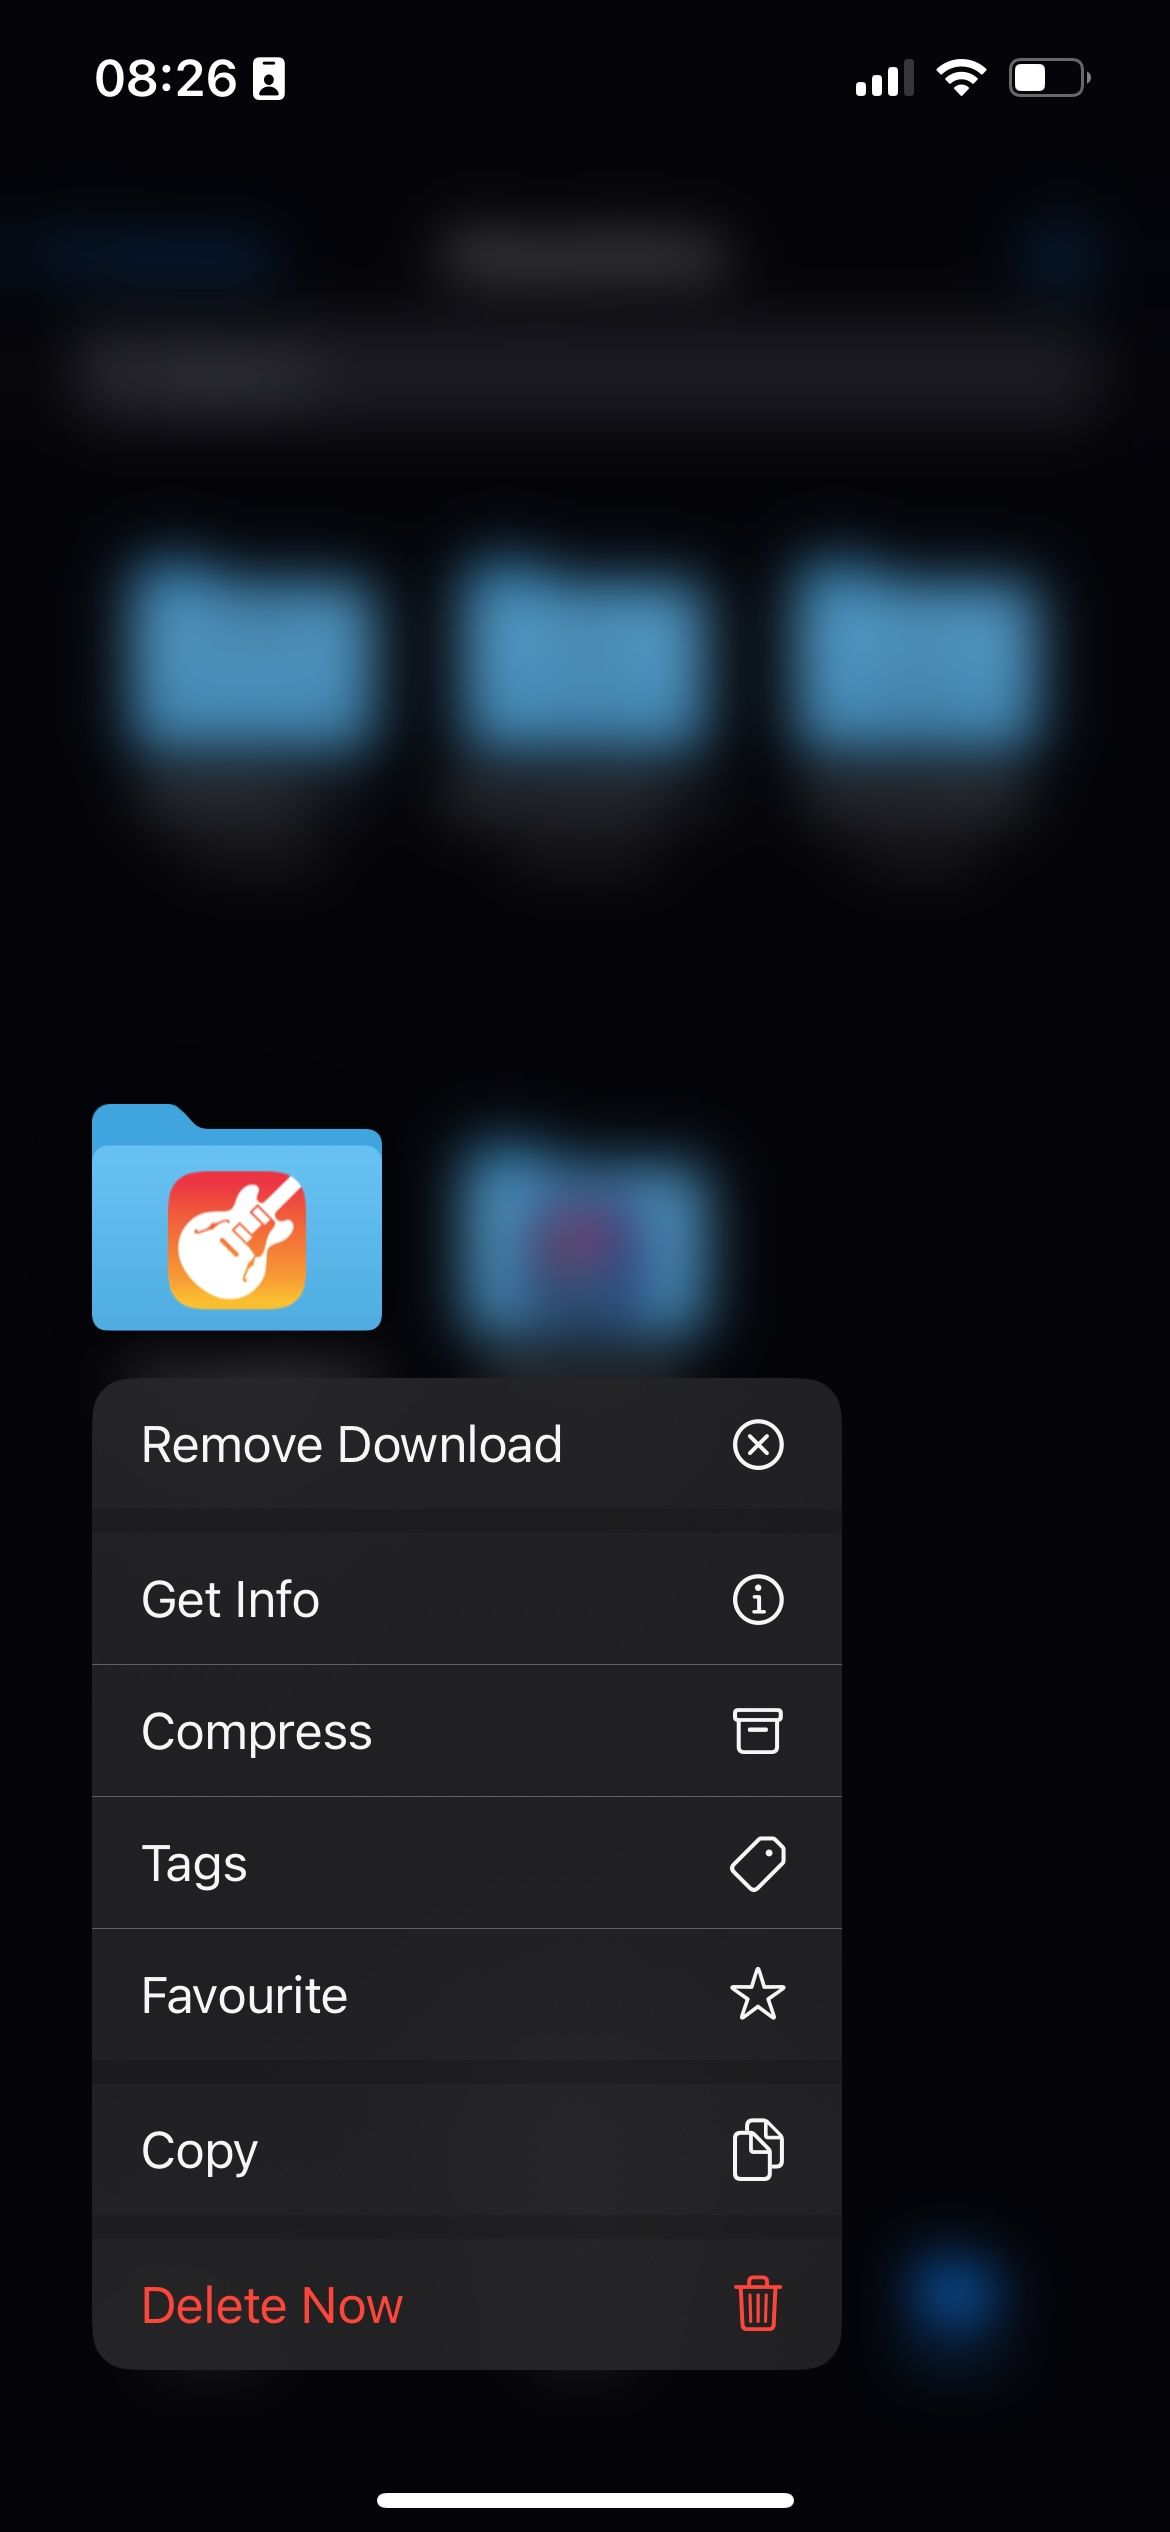 Context menu in iOS Files app